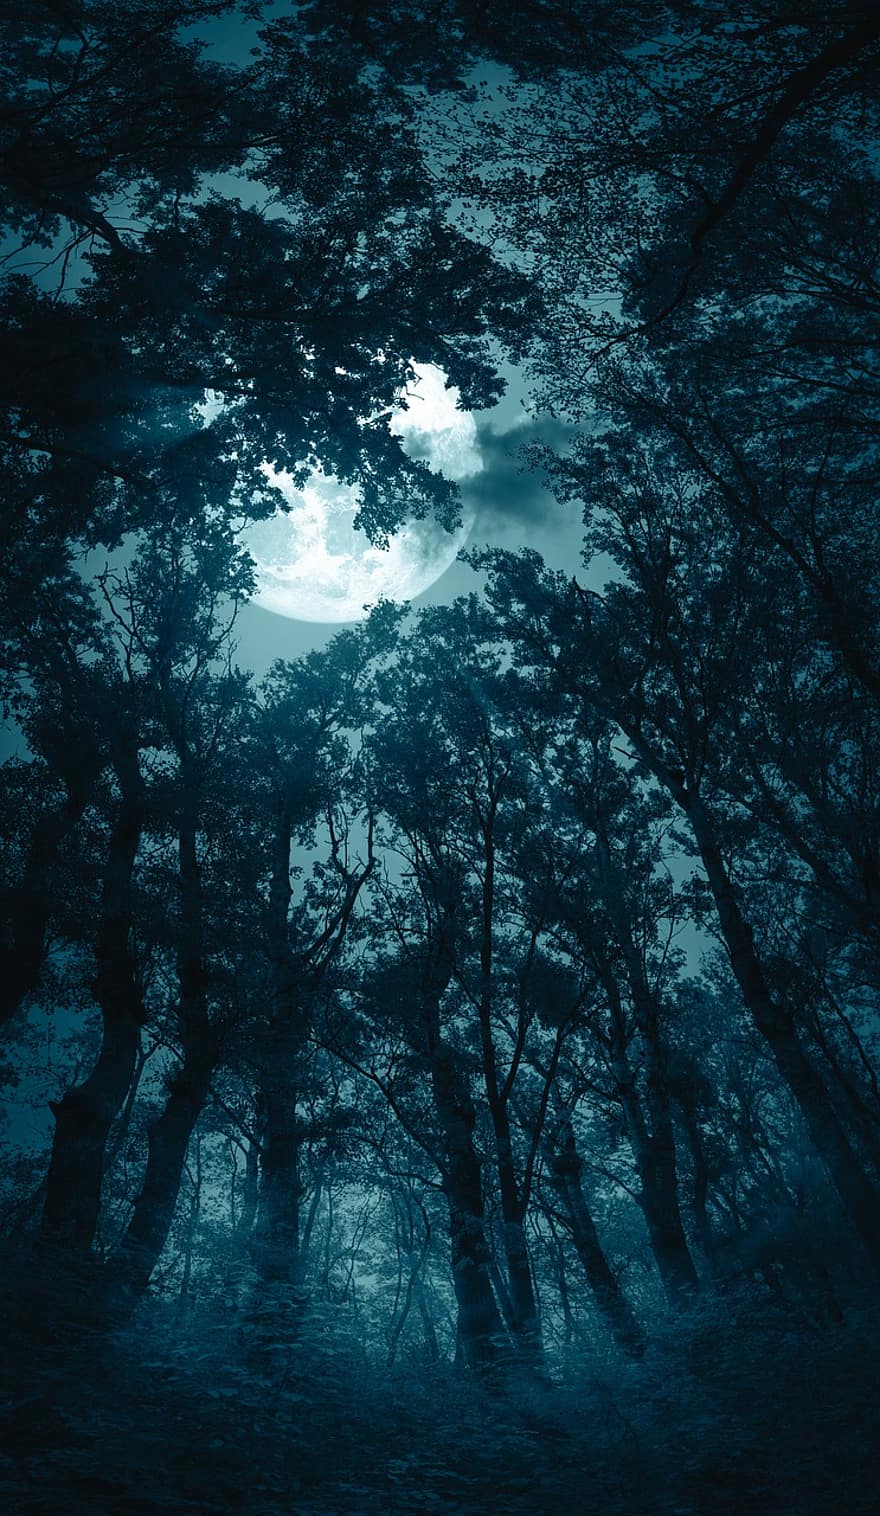 δάσος, φεγγάρι, ομίχλη, Νύχτα, Απόκριες, σεληνόφωτο, ανατριχιαστικός, σκοτάδι, μυστηριώδης, φαντασία, φρίκη